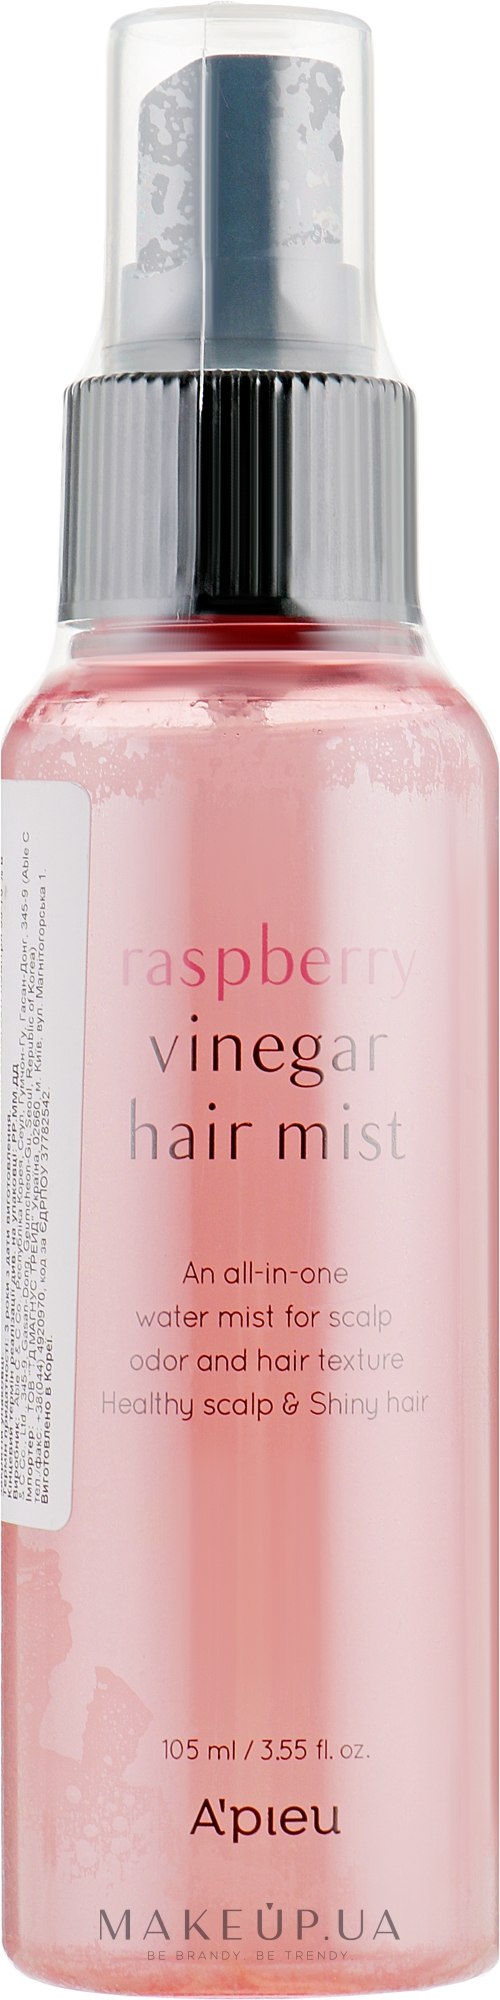 Міст для волосся з малиновим оцтом - A'pieu Raspberry Vinegar Hair Mist — фото 105ml